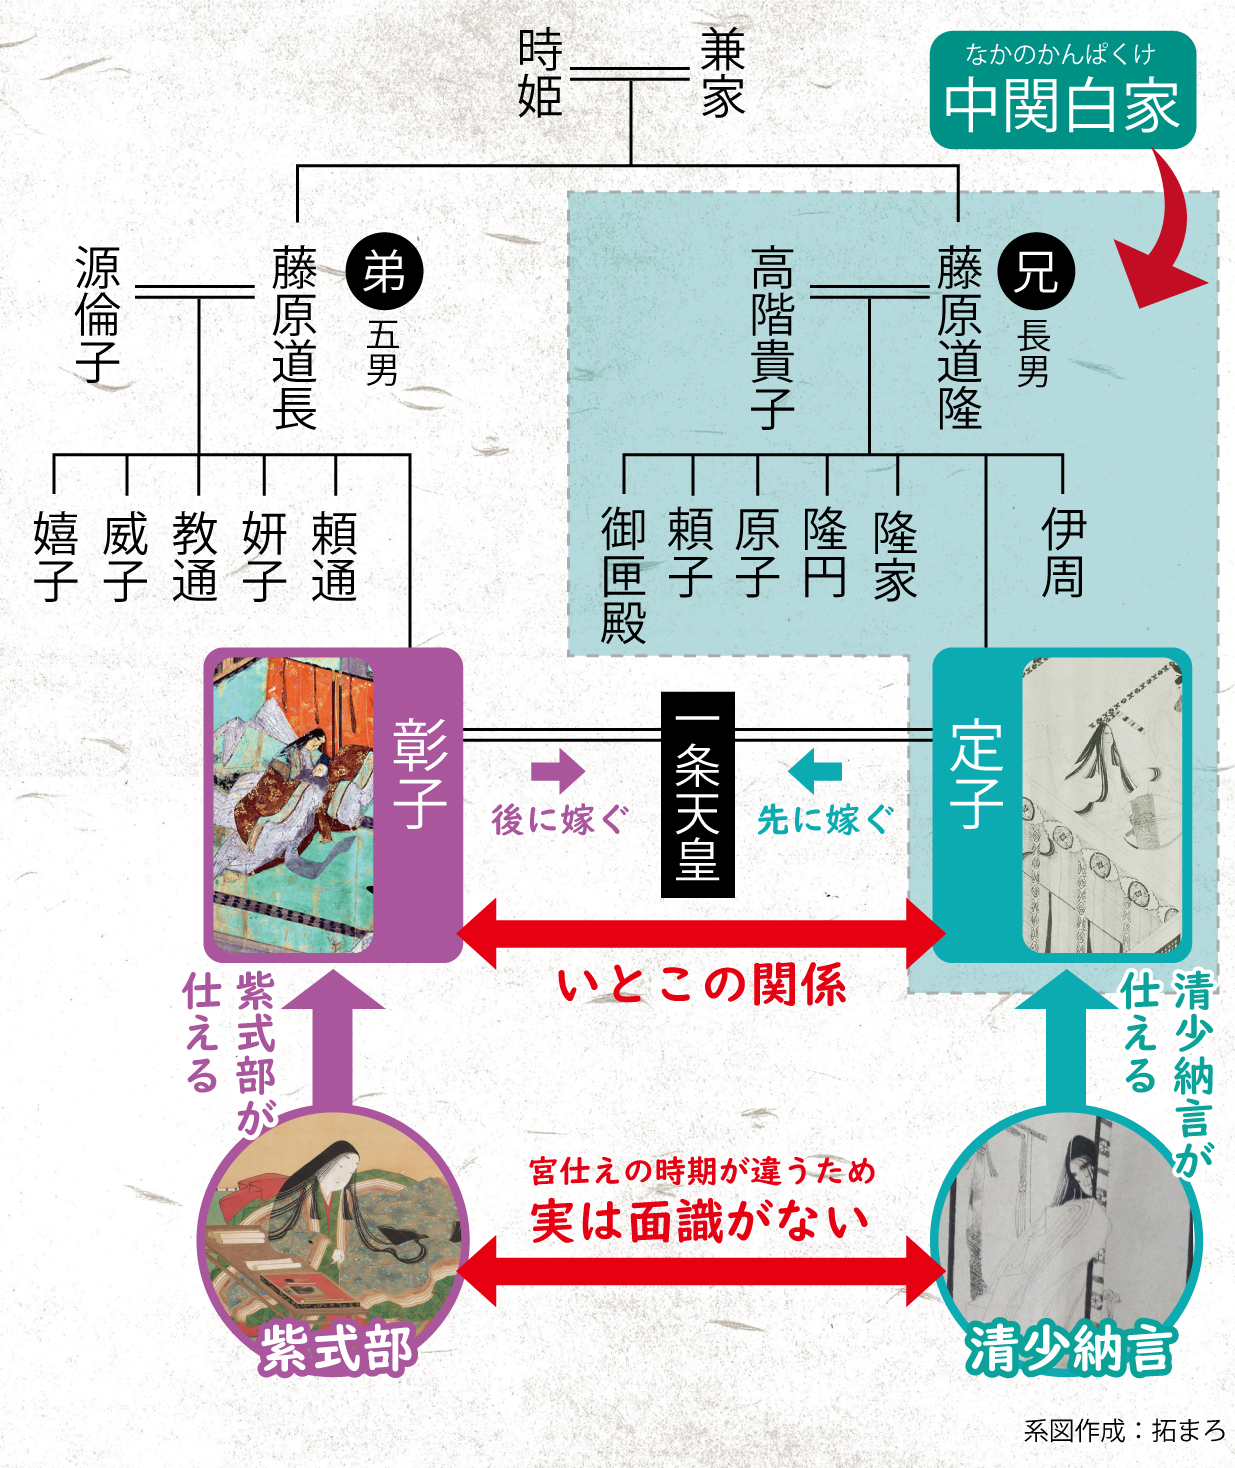 清少納言と紫式部が仕えた中宮との関係を定子と彰子の家系図で解説 日本の白歴史